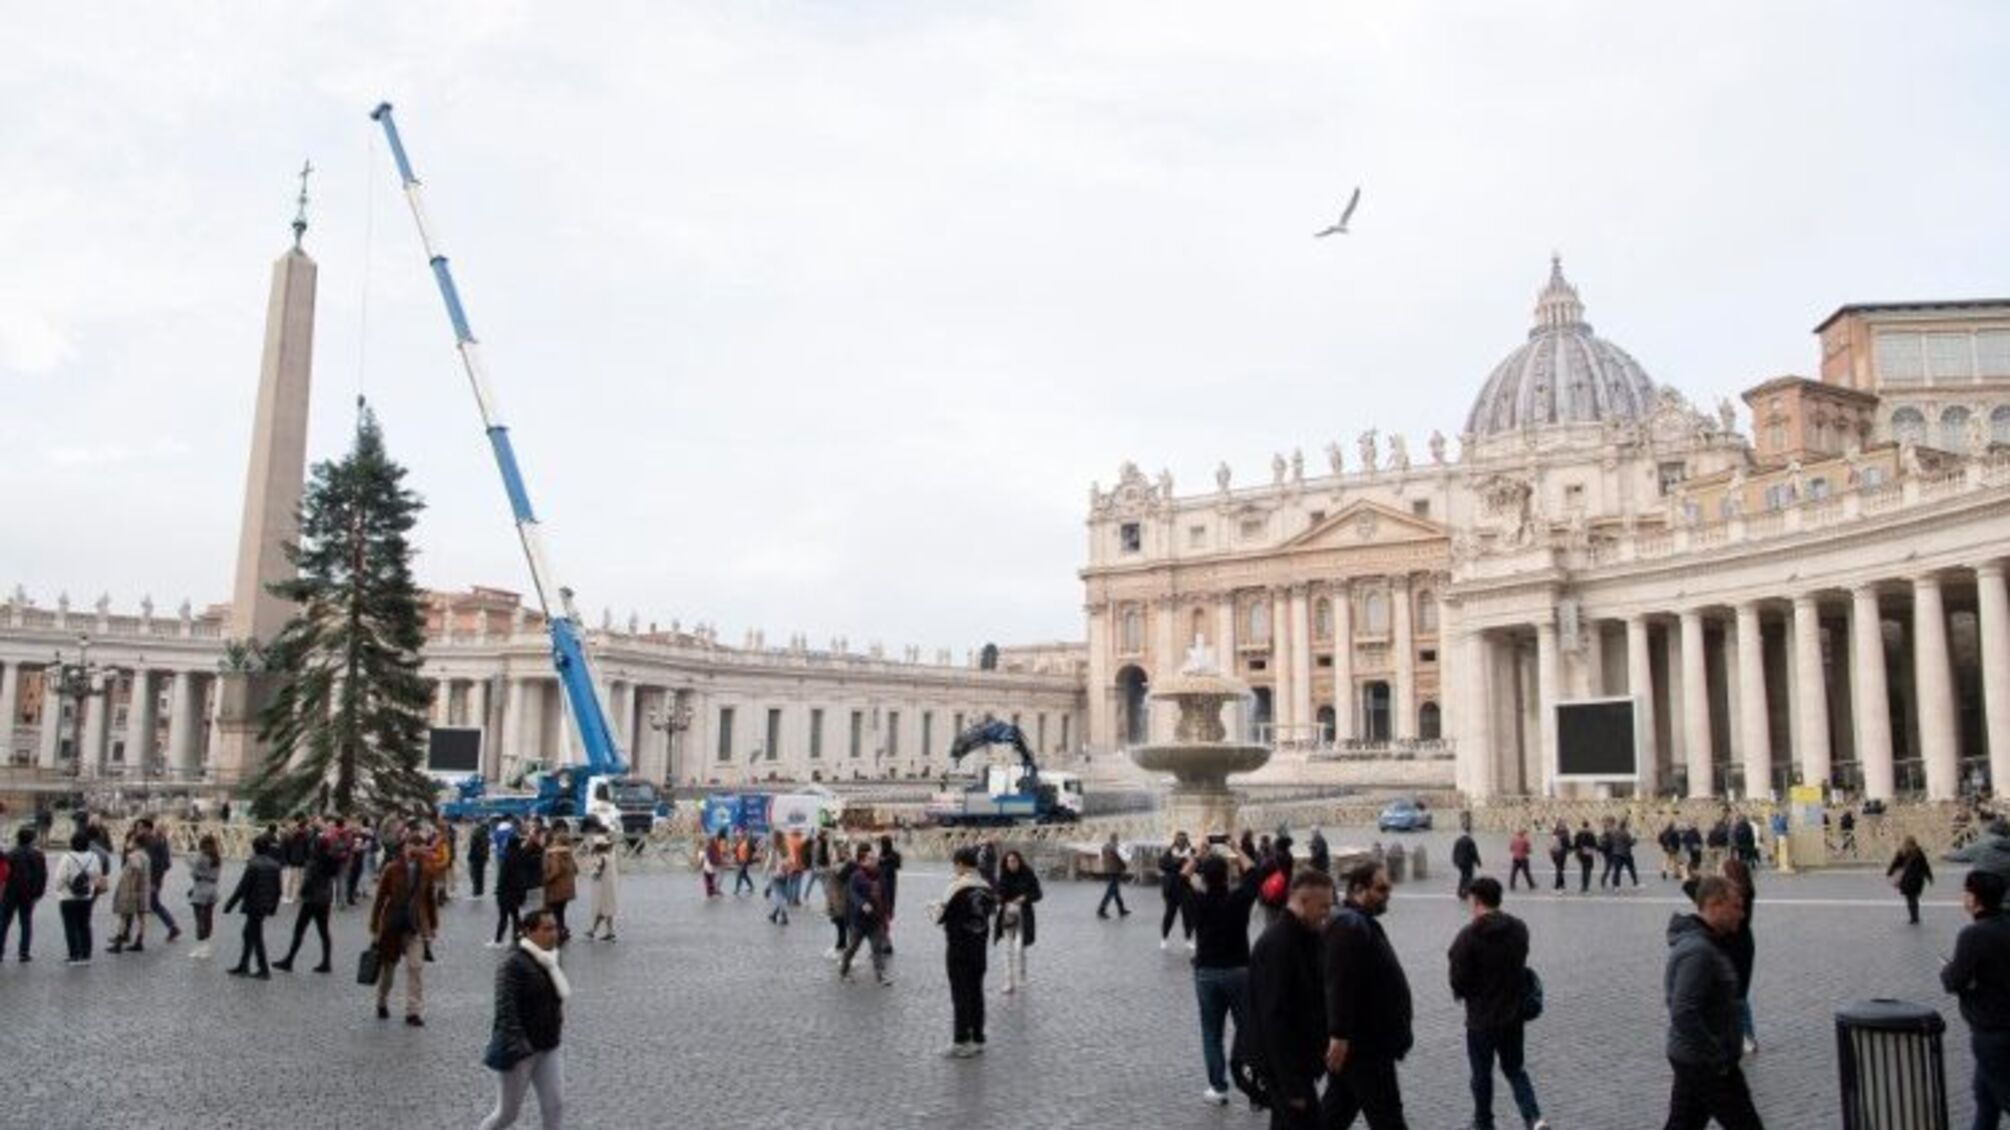 процес монтажу головної ялинки на площі Святого Петра у Ватикані